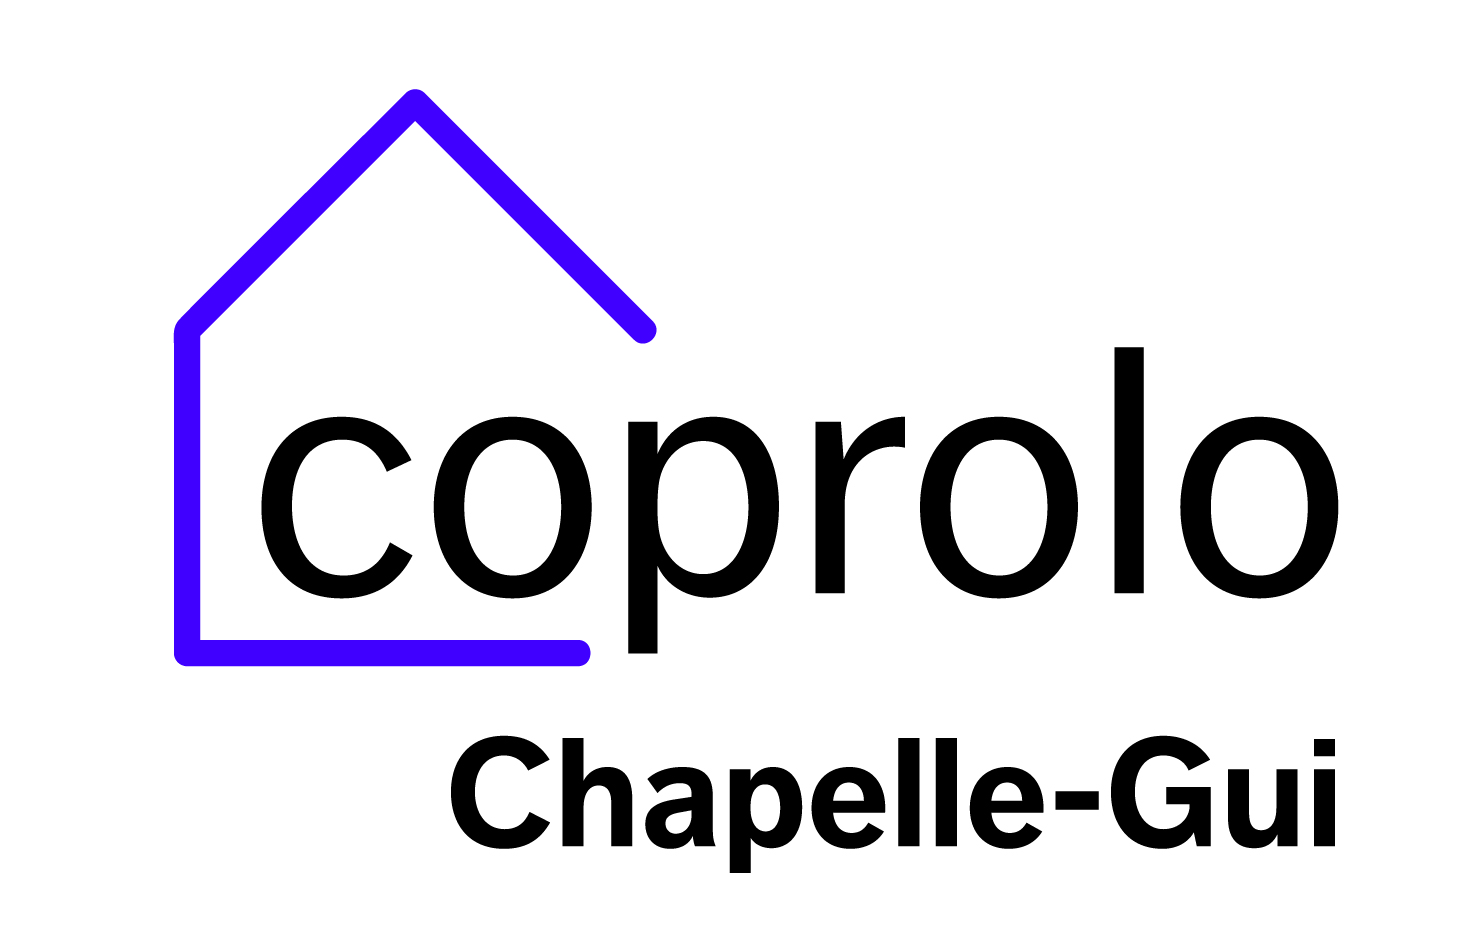 Coprolo ChapelleGui